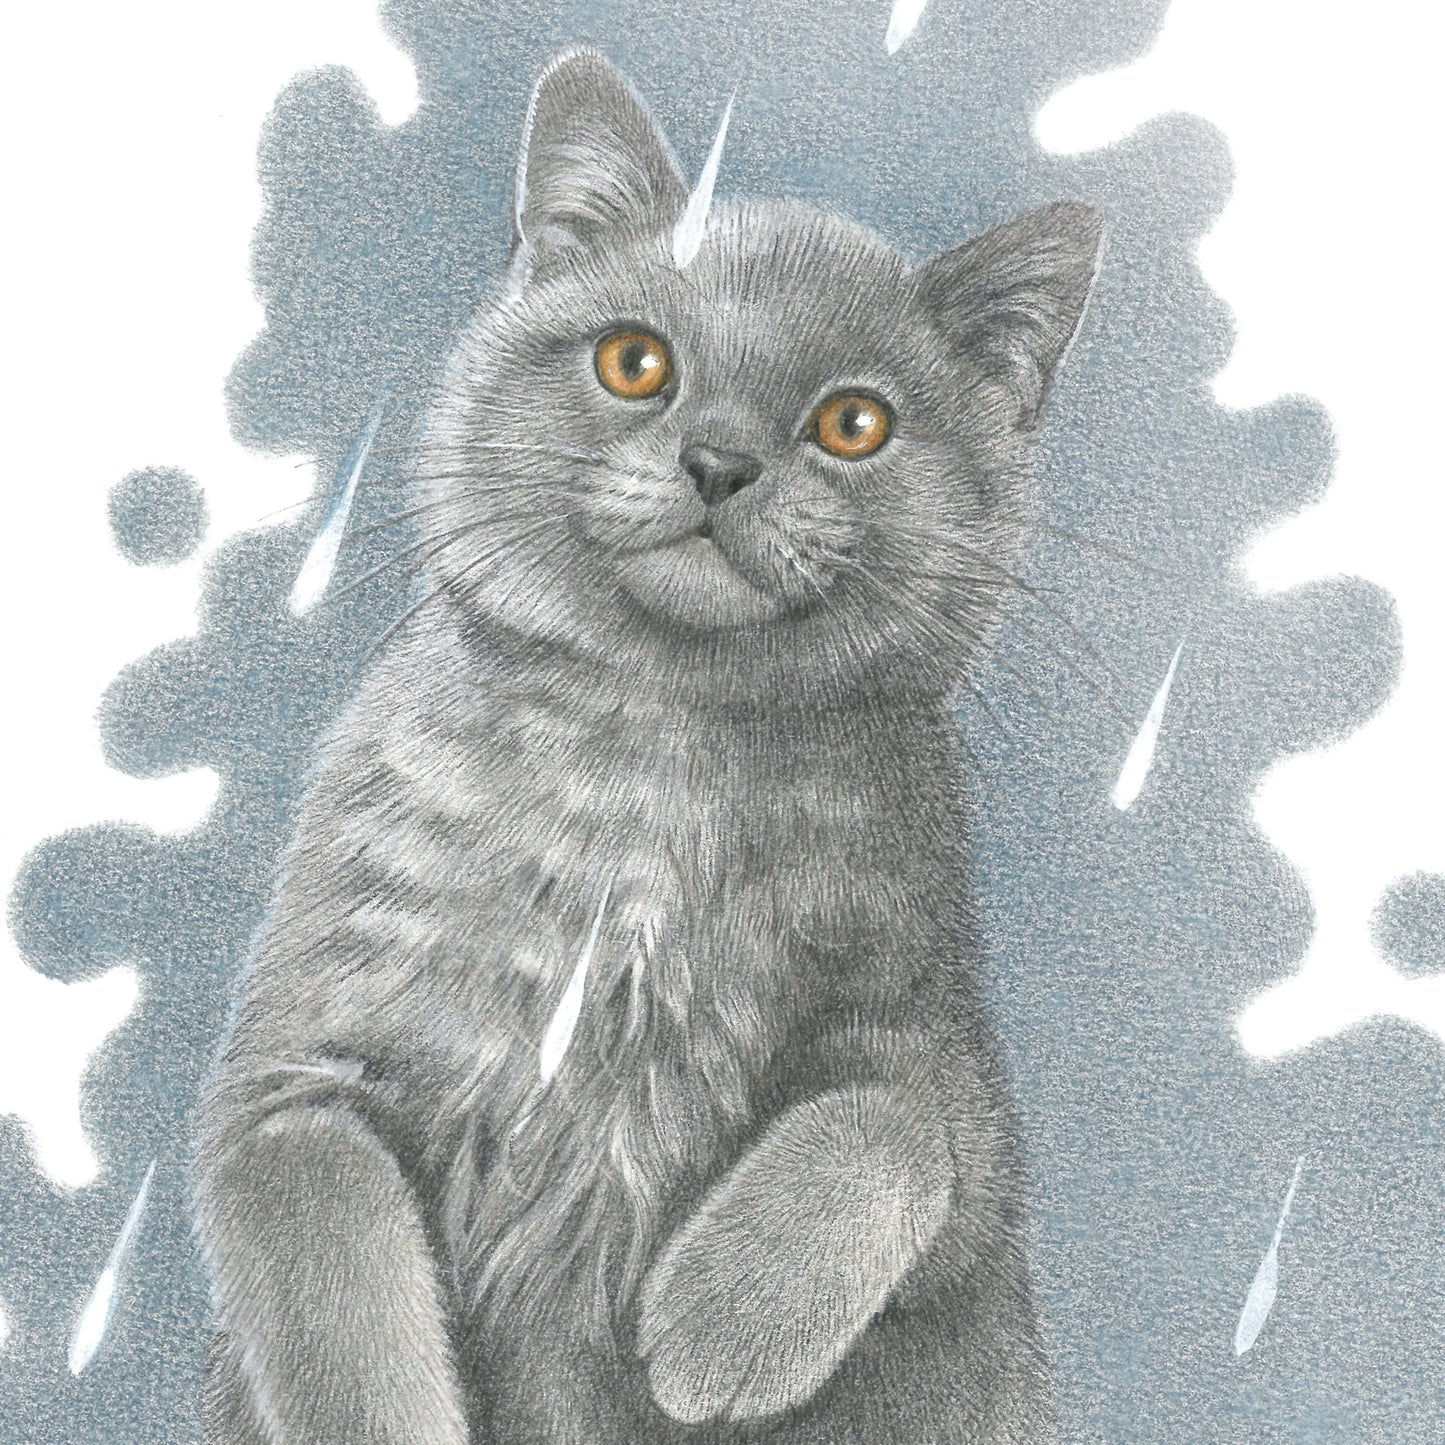 Vierkante kaart -  It's Raining Cat's - Brits Korthaar